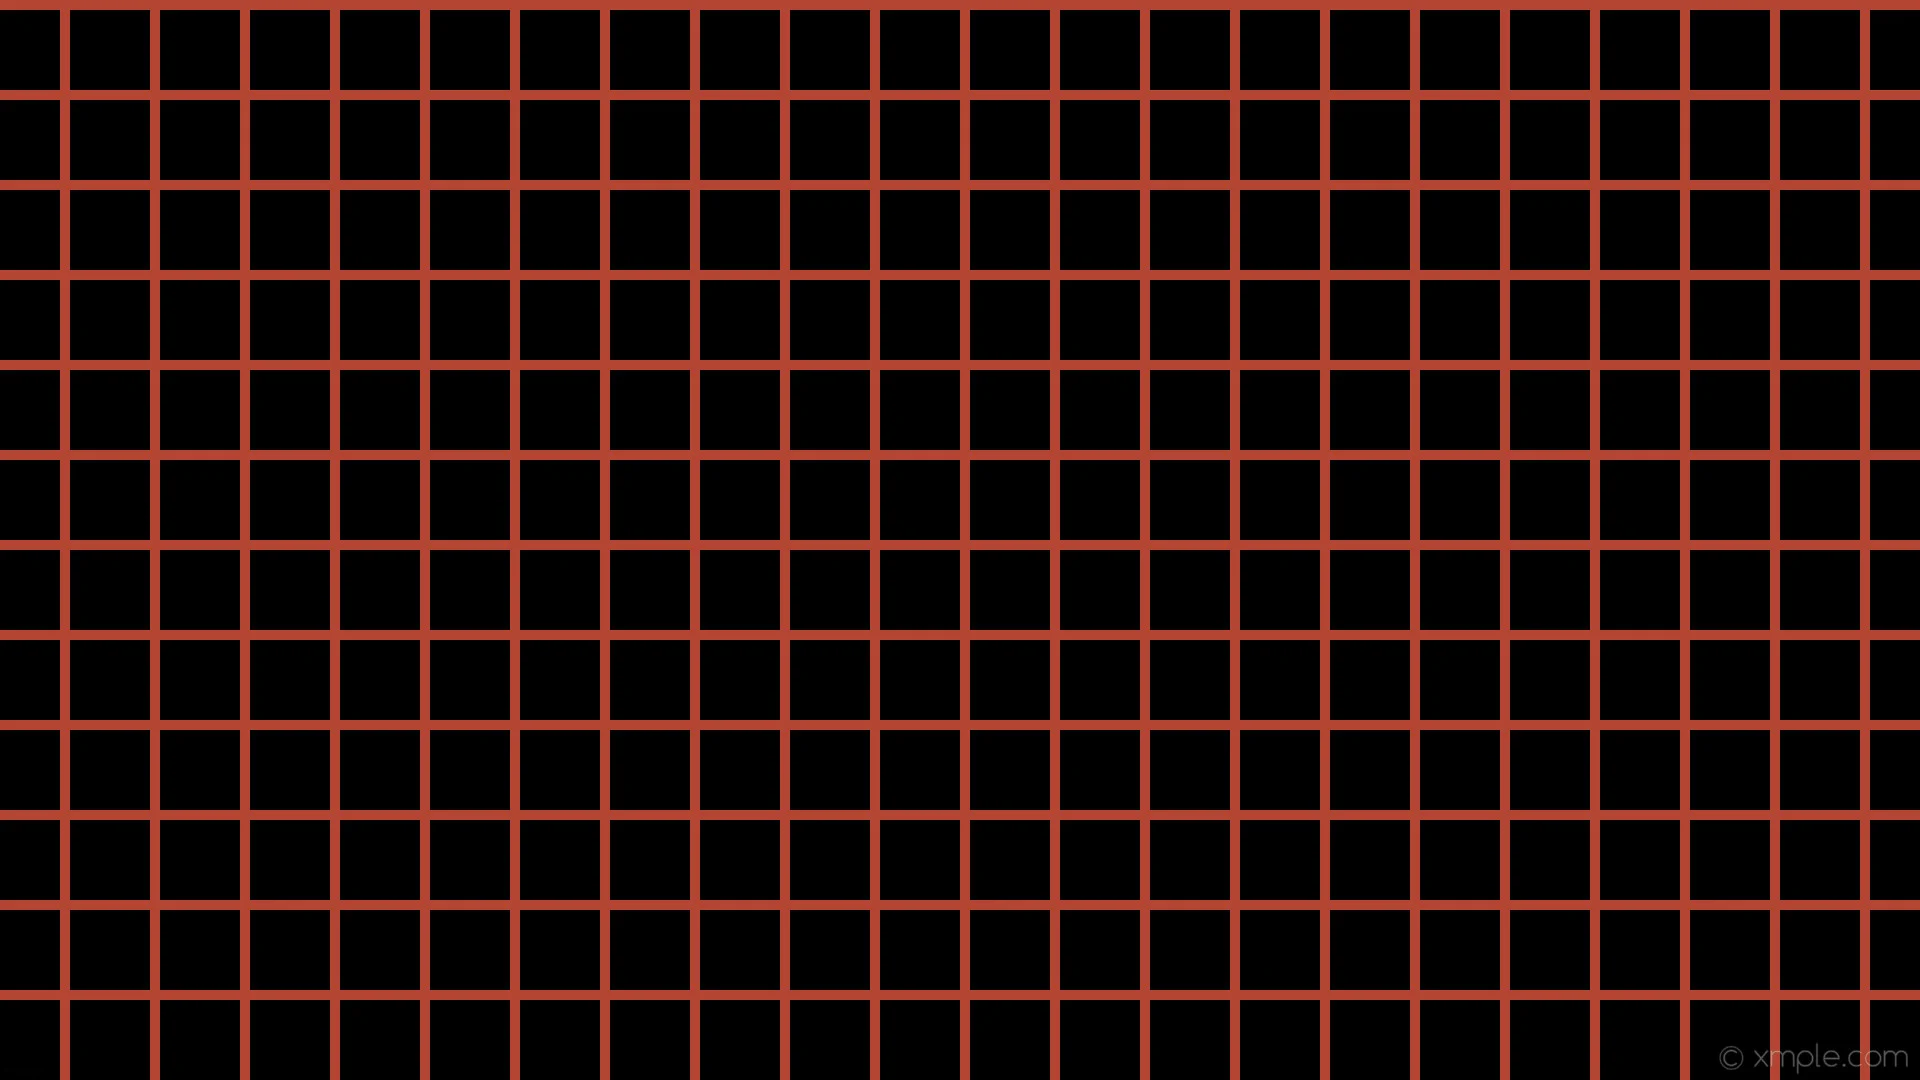 wallpaper graph paper black orange grid tomato #000000 #ff6347 0Â° 10px 90px